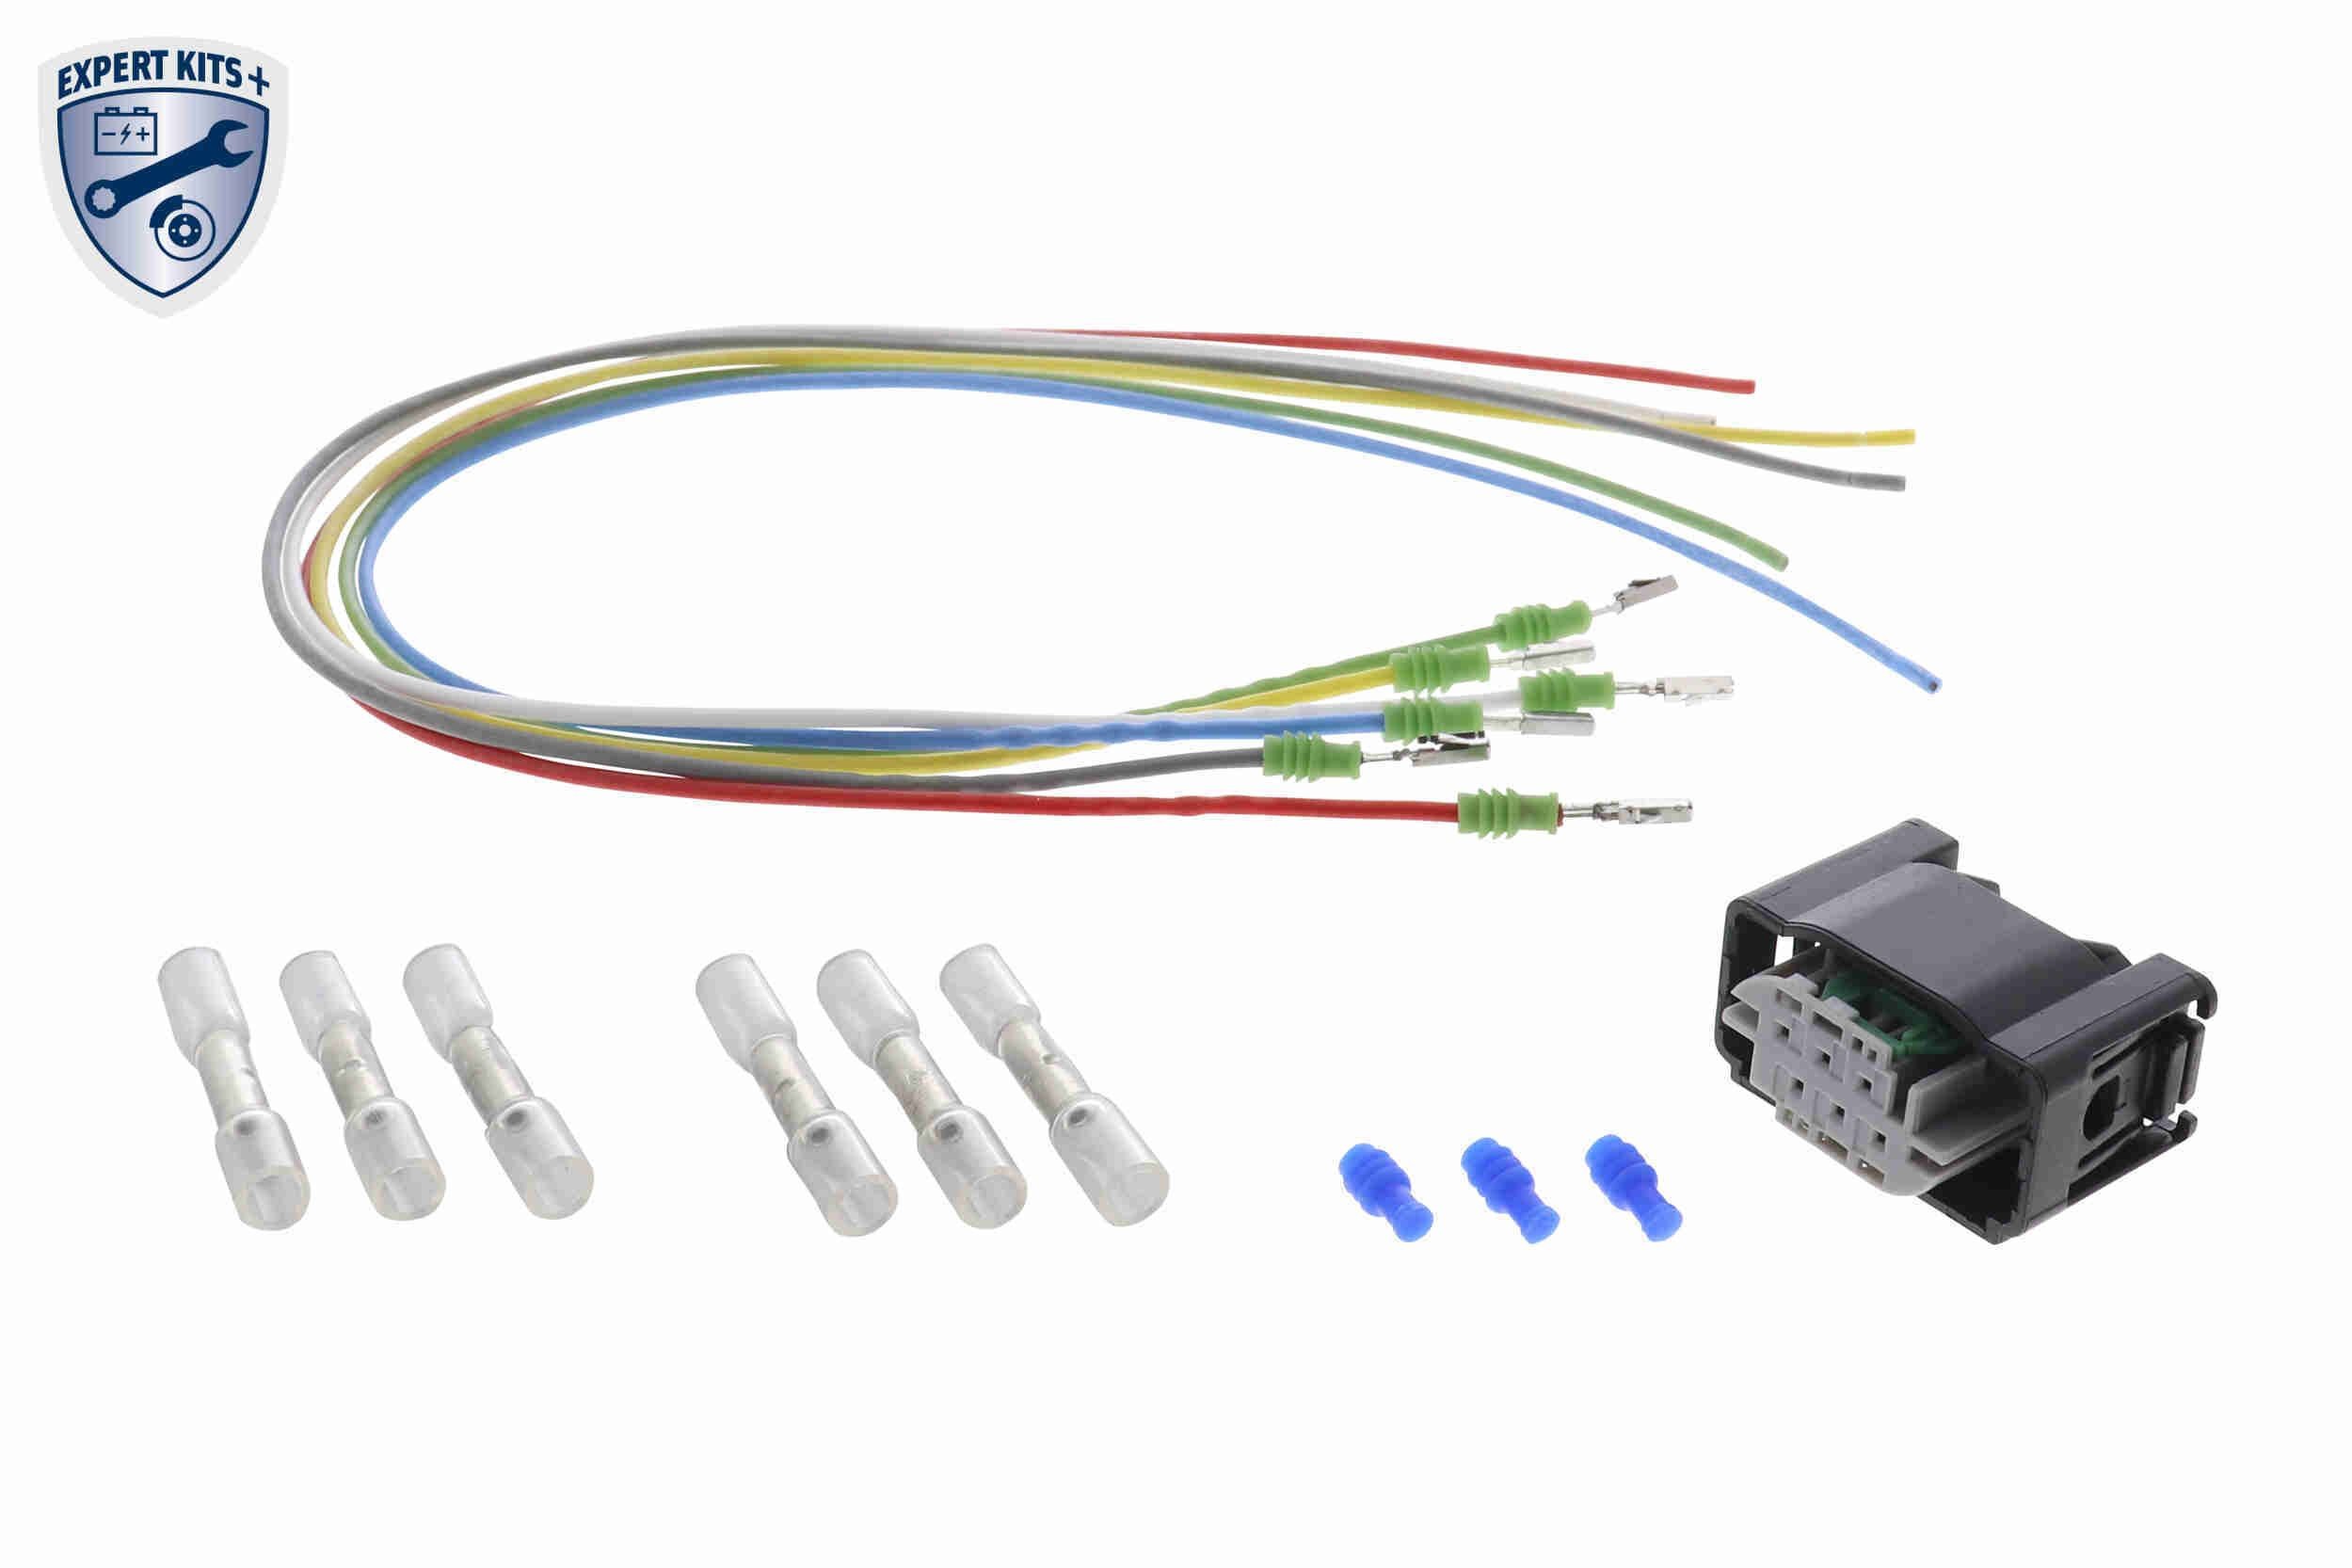 VEMO V99-83-0013 Kabelsatz Stellelement, Leuchtweitenregulierung, mit Schrumpfverbinder, mit Stecker, EXPERT KITS +